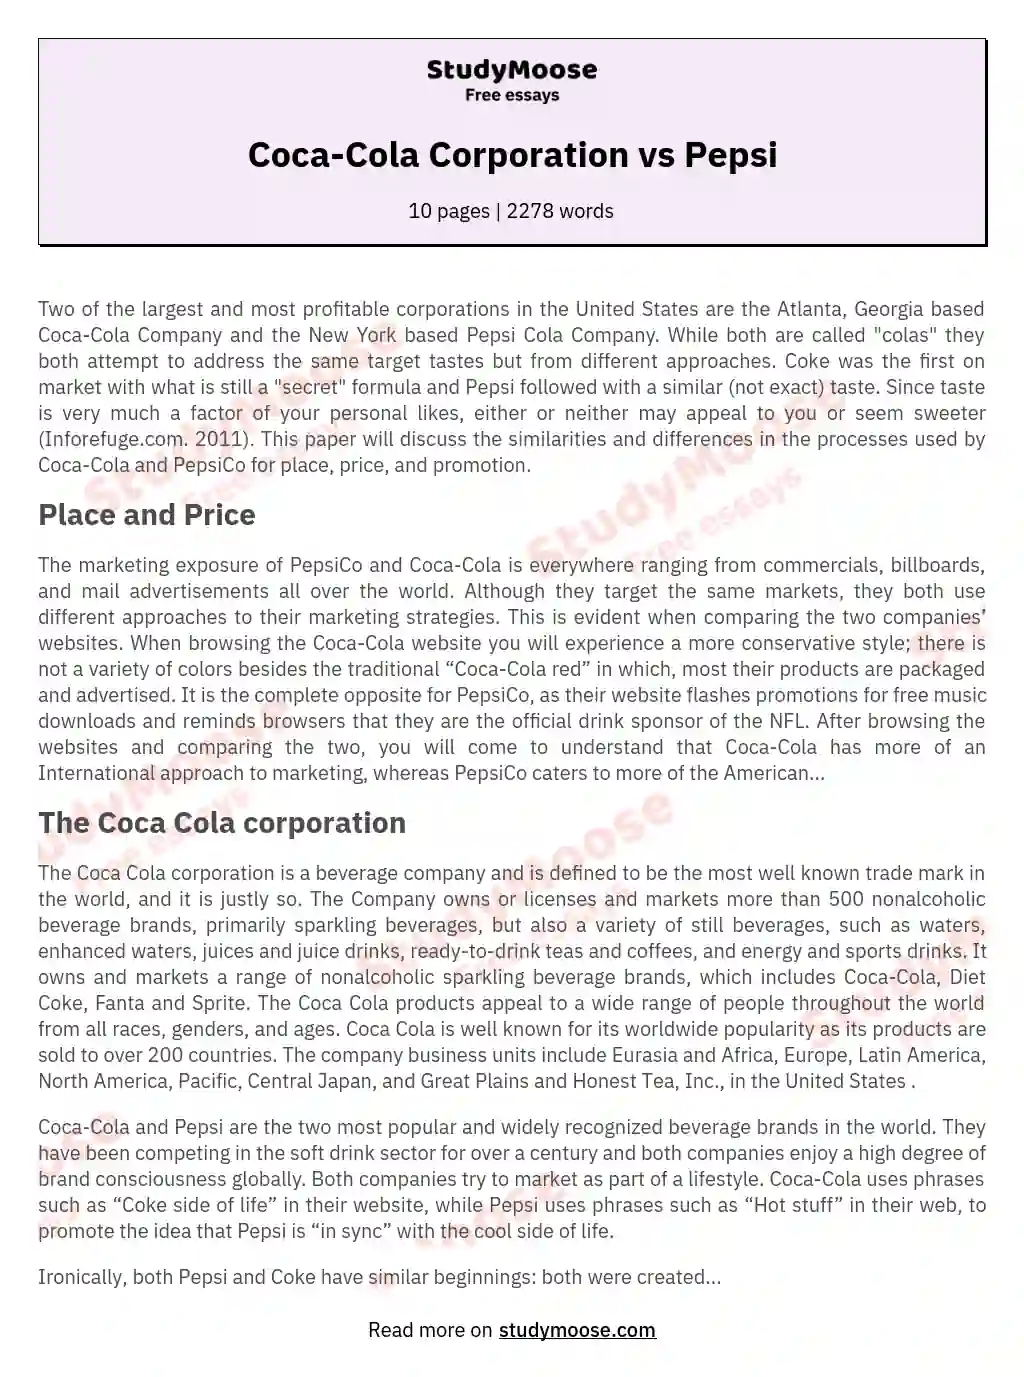 Coca-Cola Corporation vs Pepsi essay